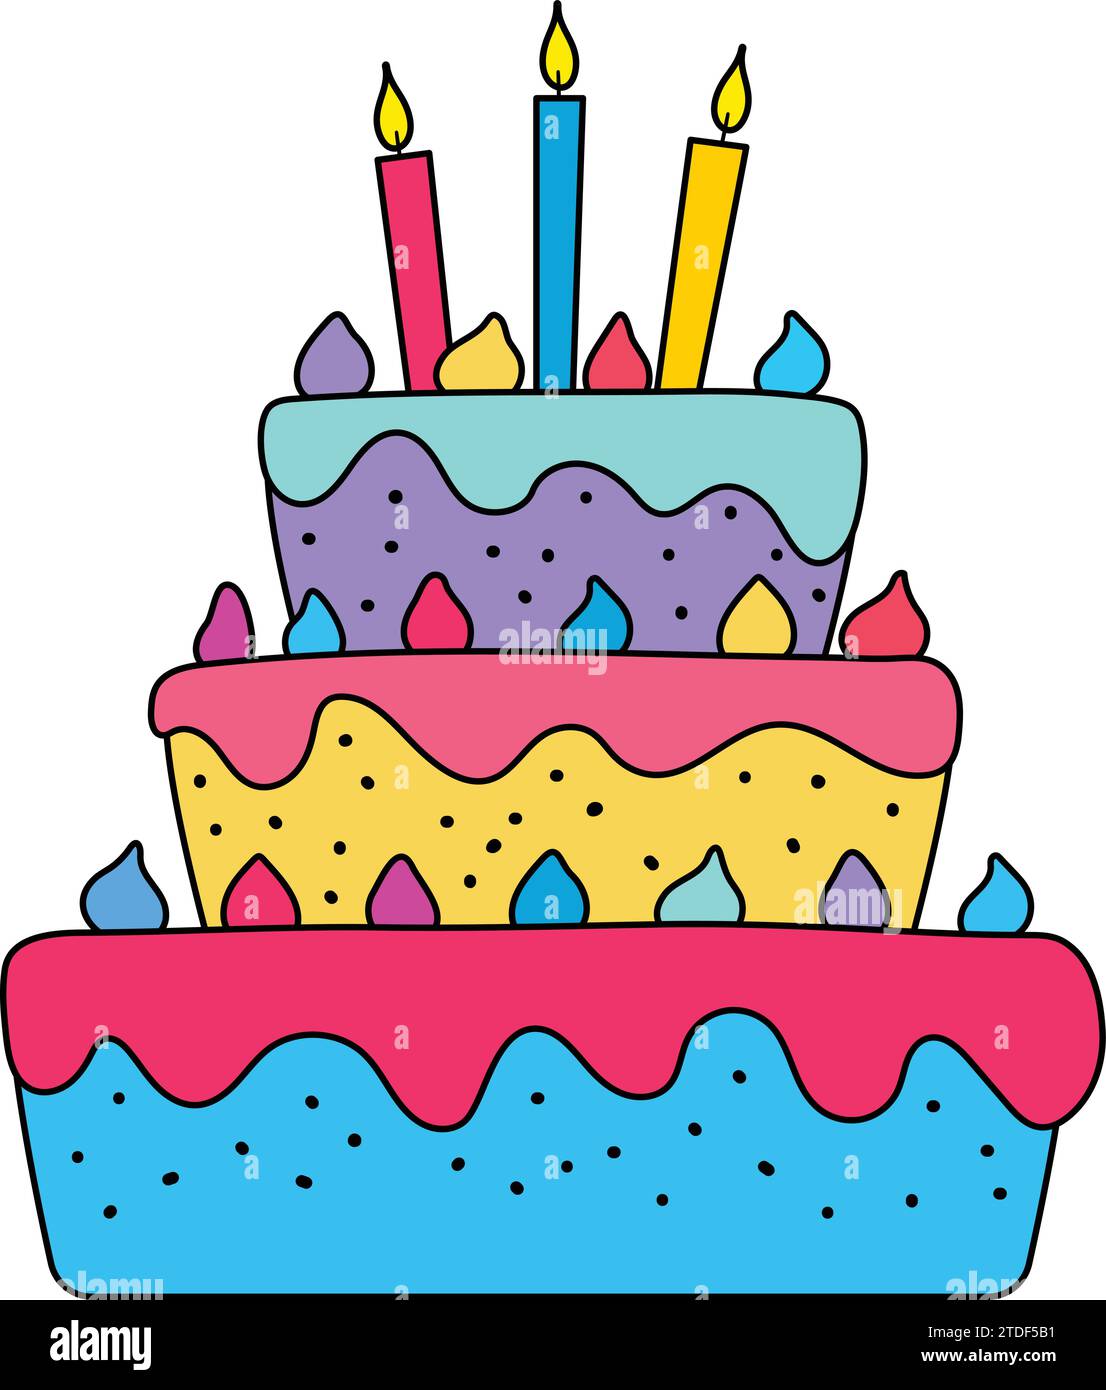 Gâteau D'anniversaire De Fête De Célébration Avec Beaucoup De Glaçage Et De  Décorations Concept D'anniversaire De Fête De Célébration